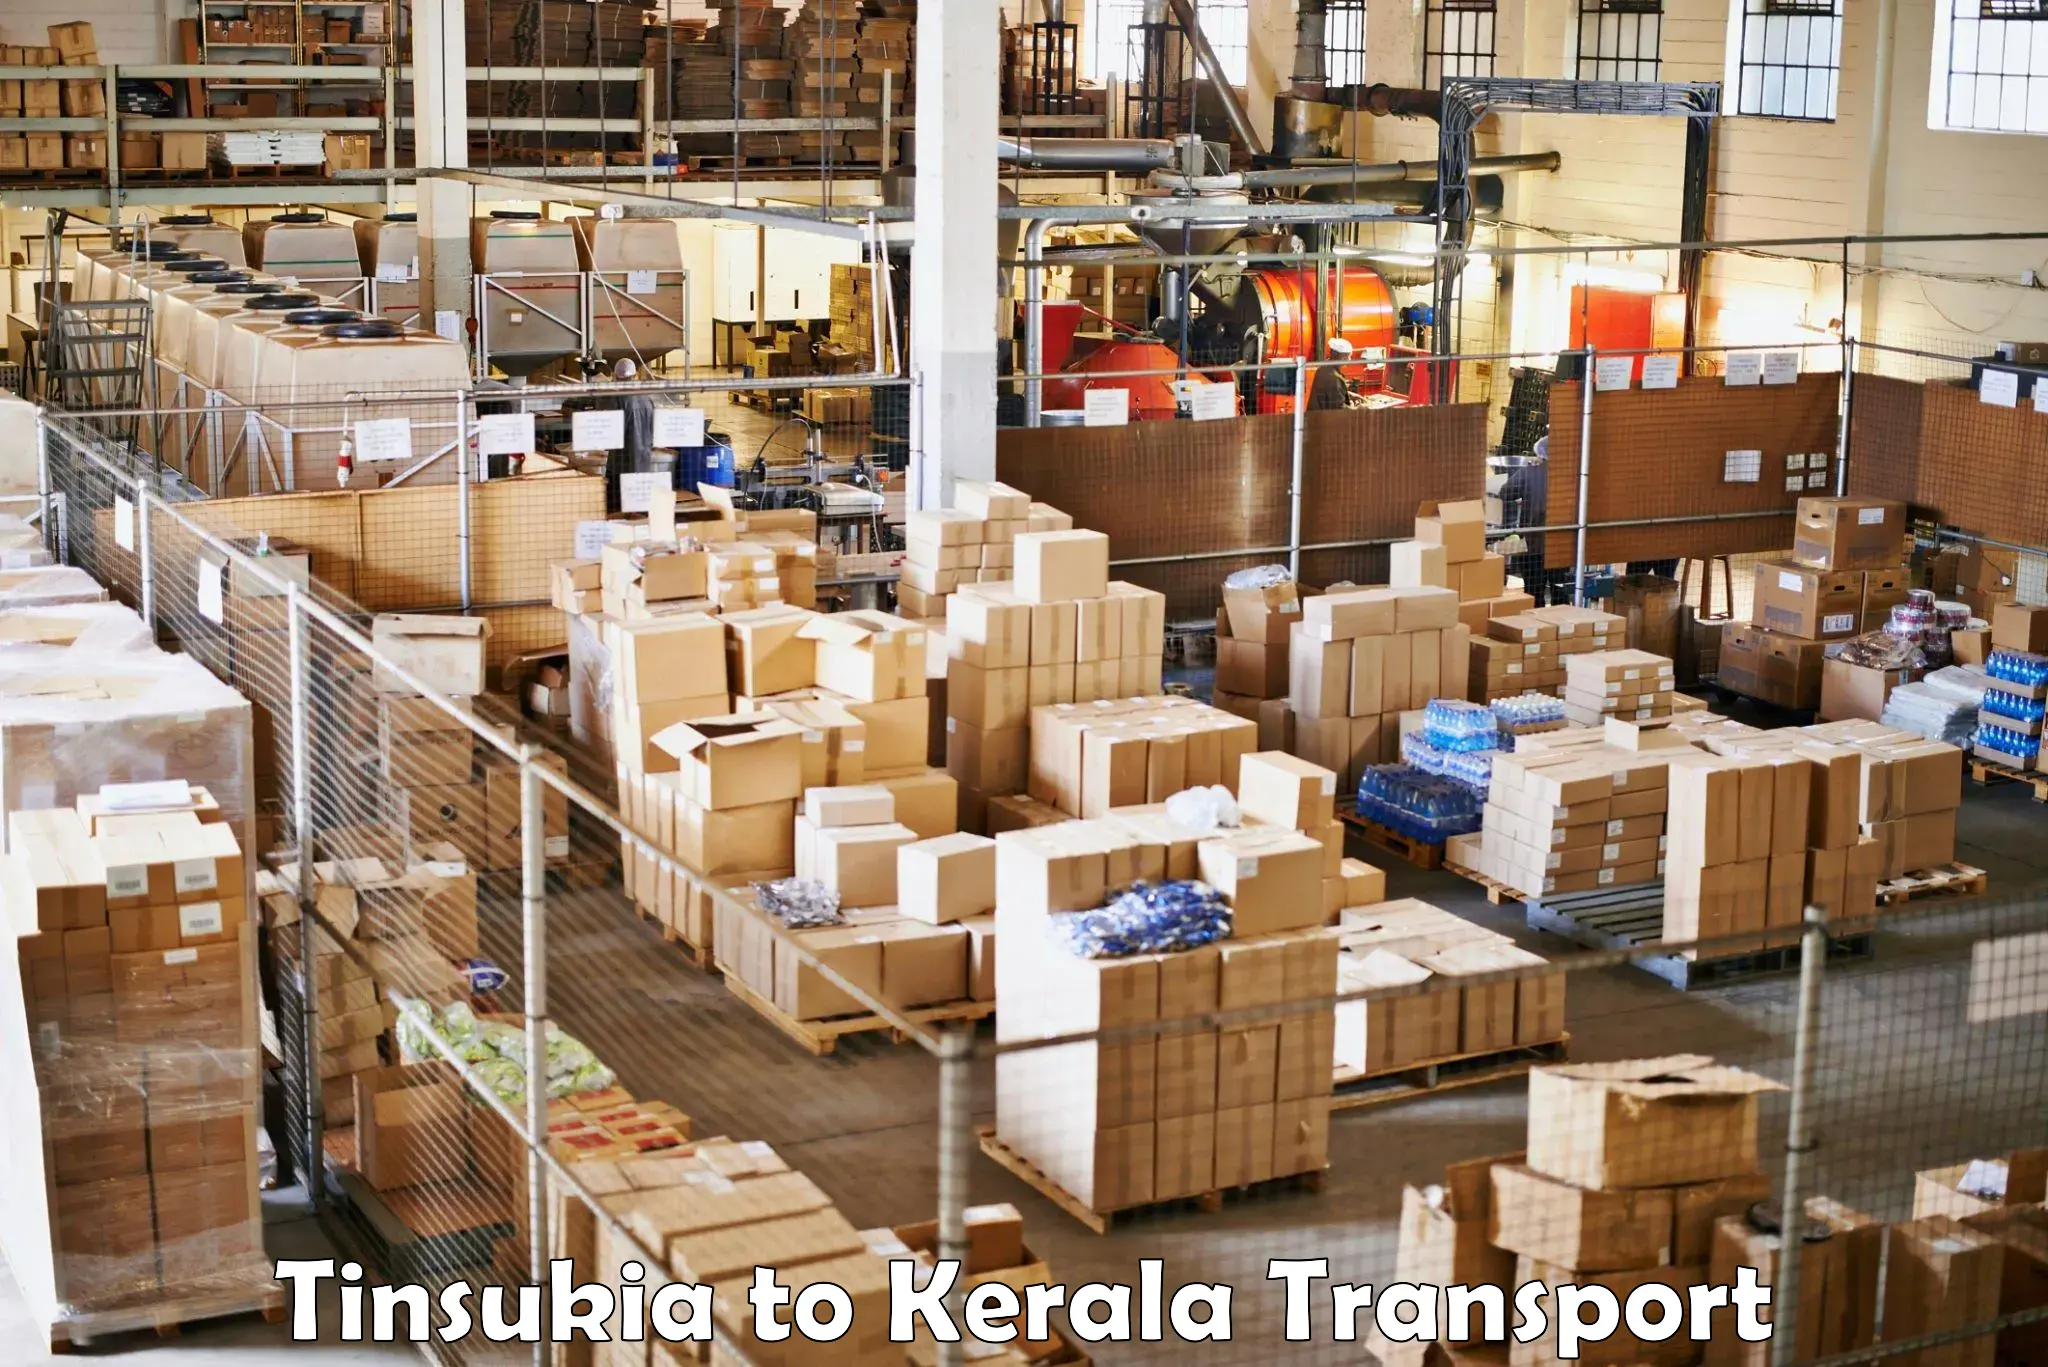 Container transportation services Tinsukia to Thodupuzha